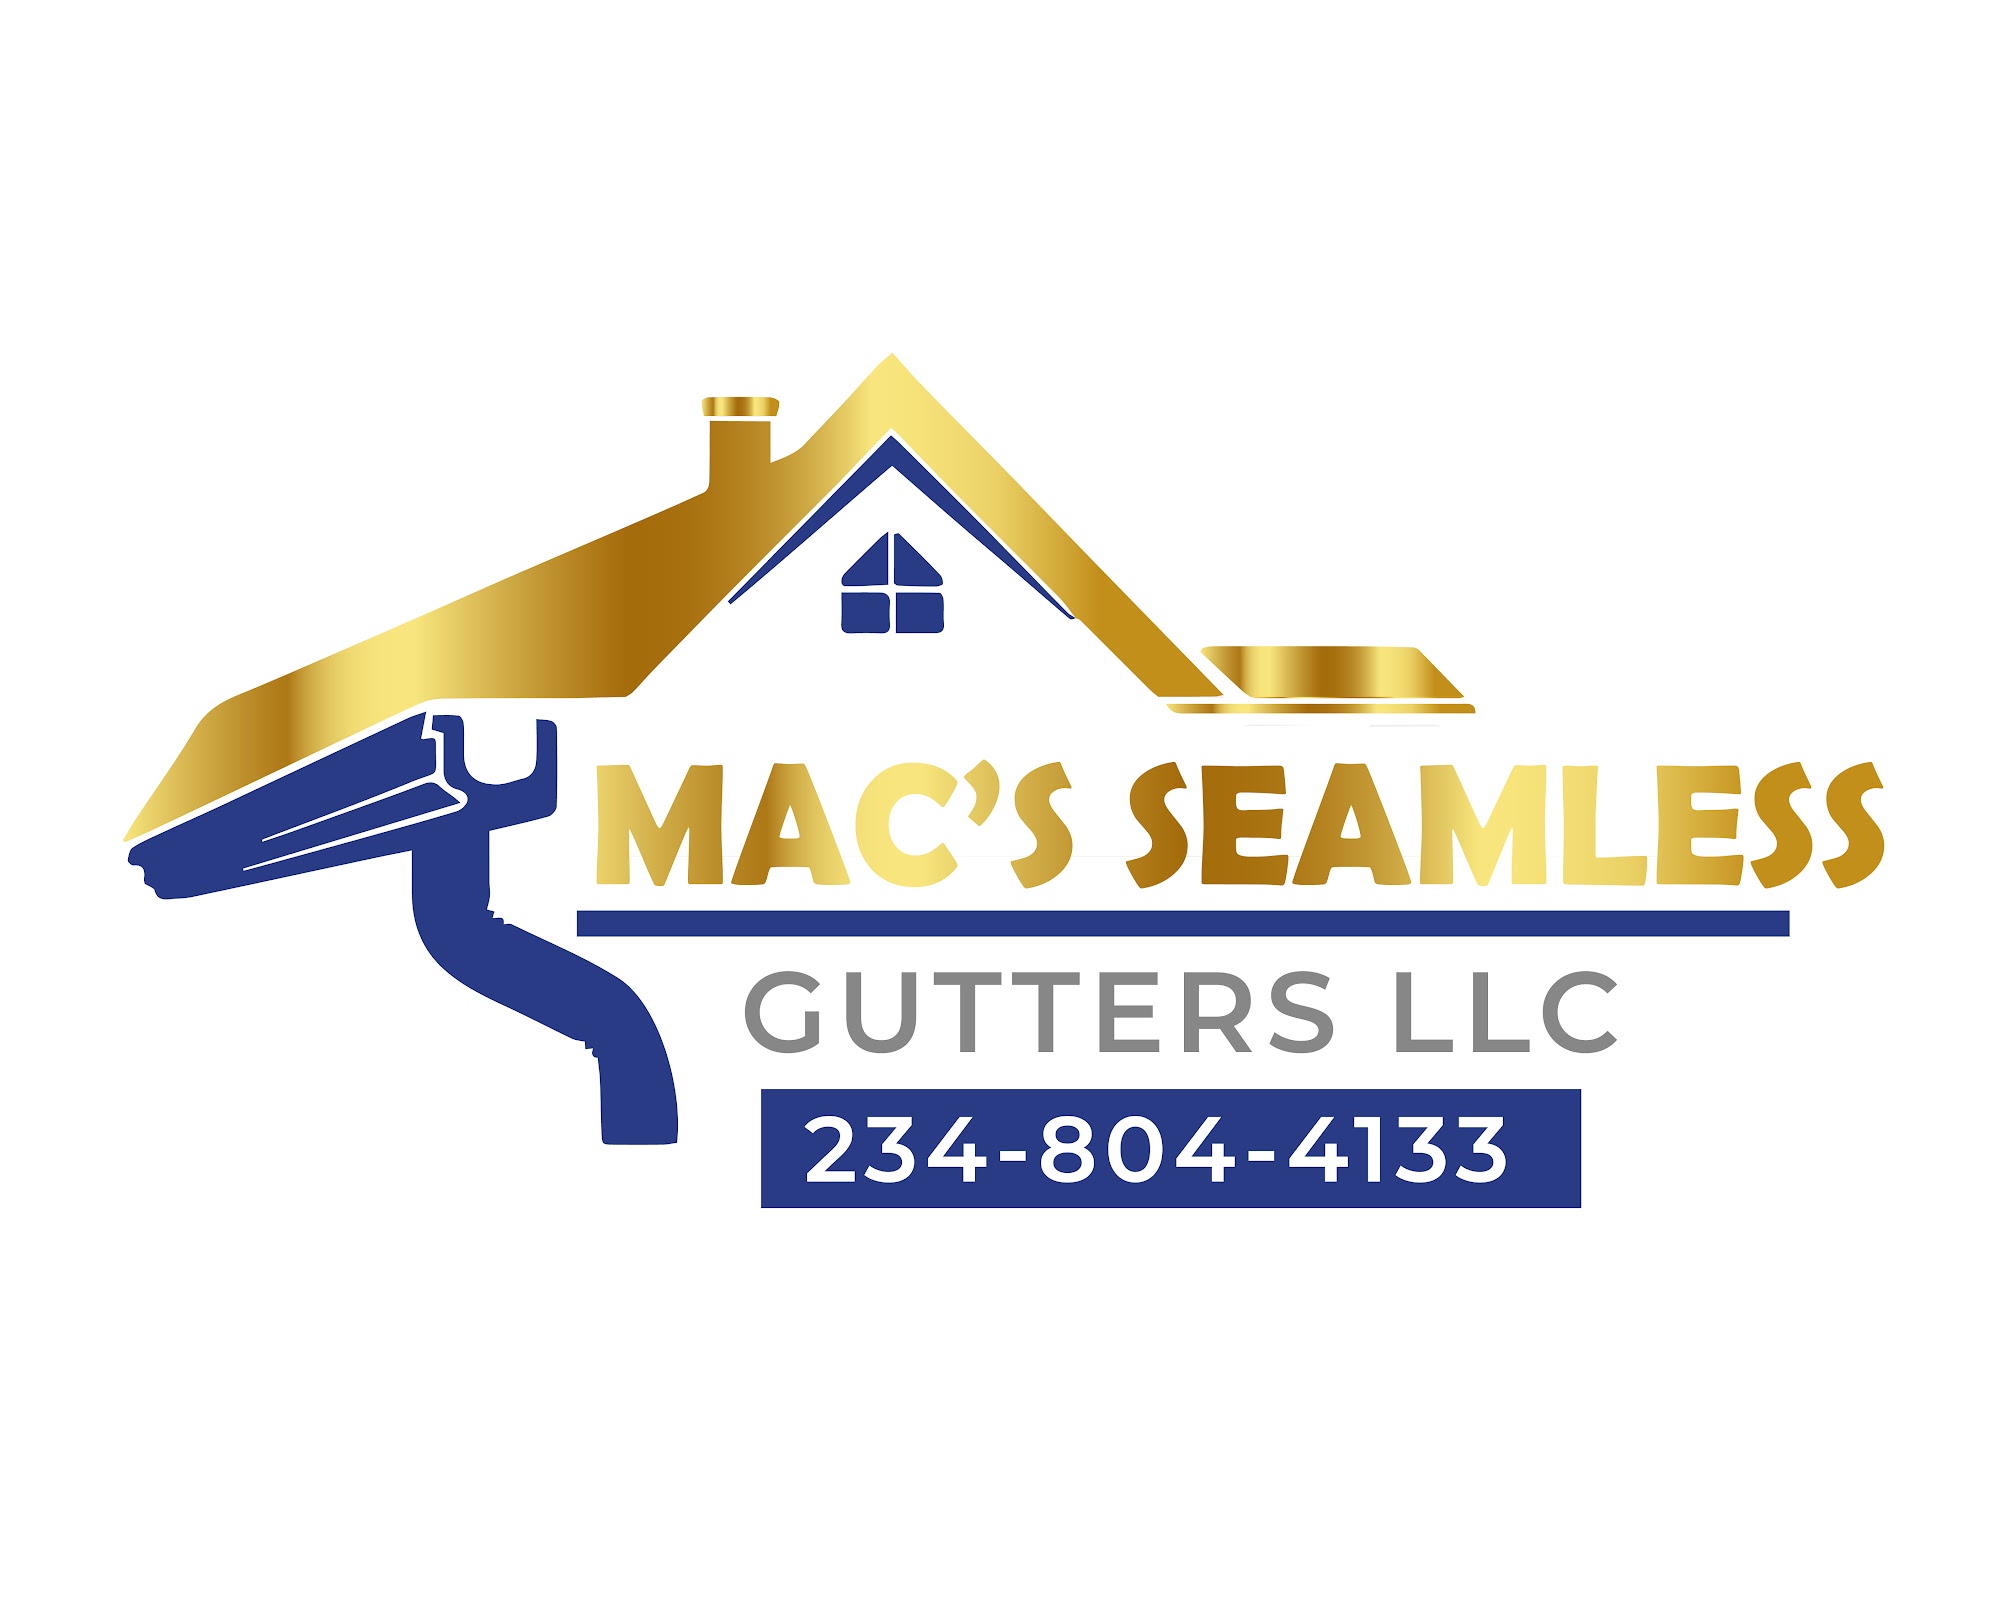 Mac's Seamless Gutters LLC